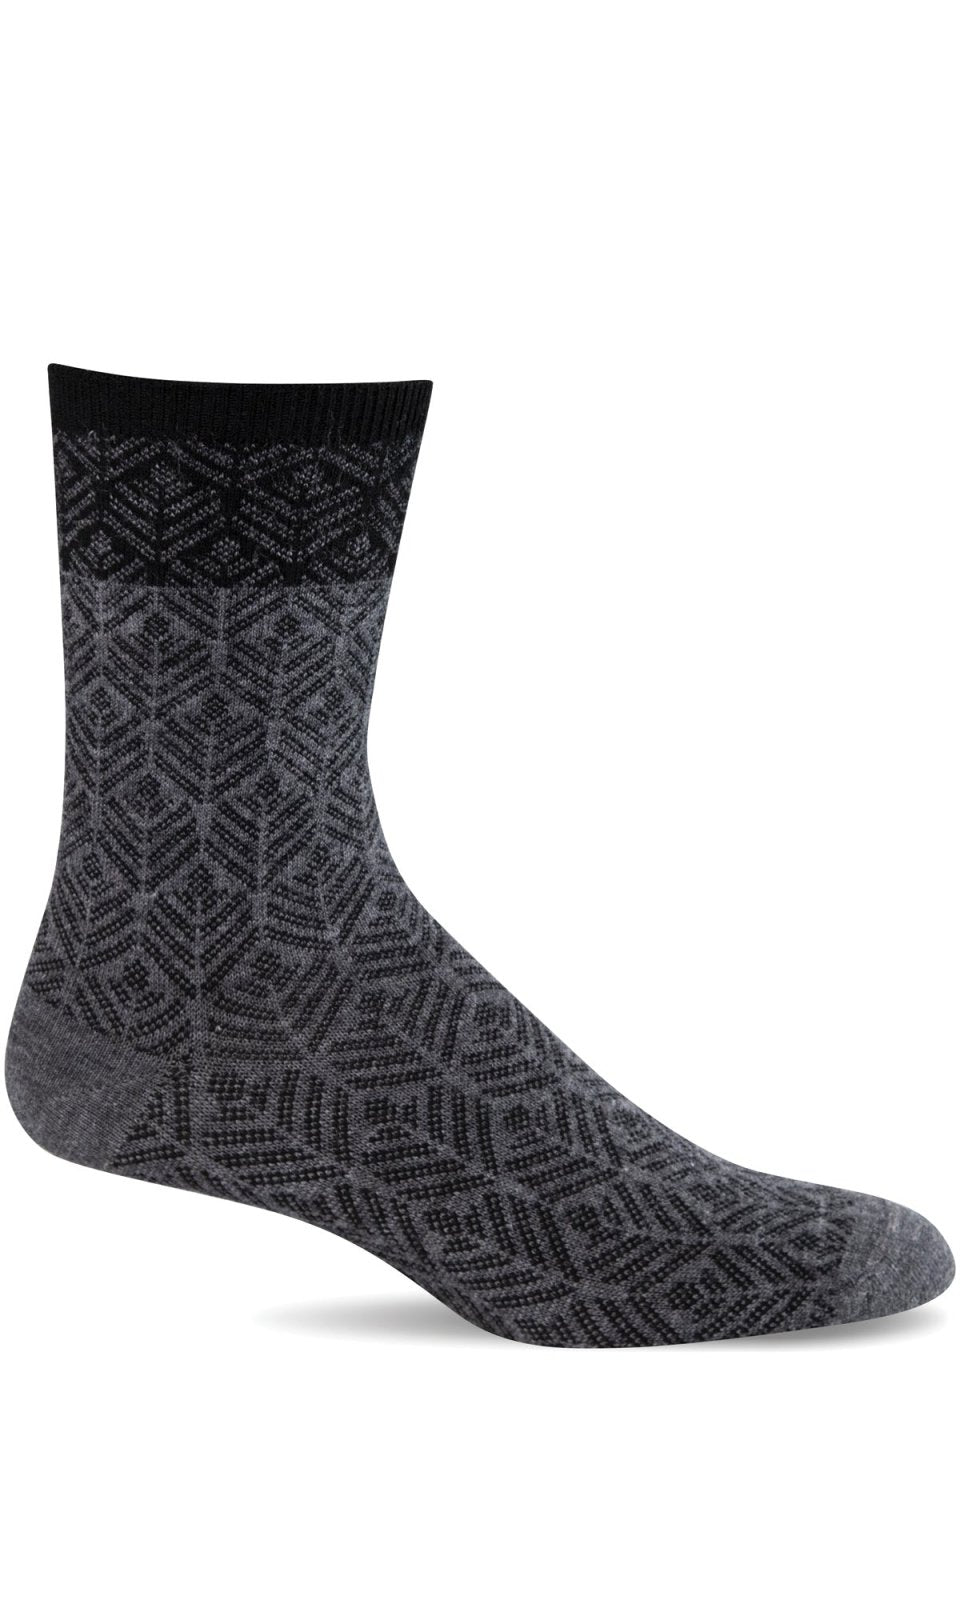 Sockwell Leaflet Essential Comfort Socks (Women's)